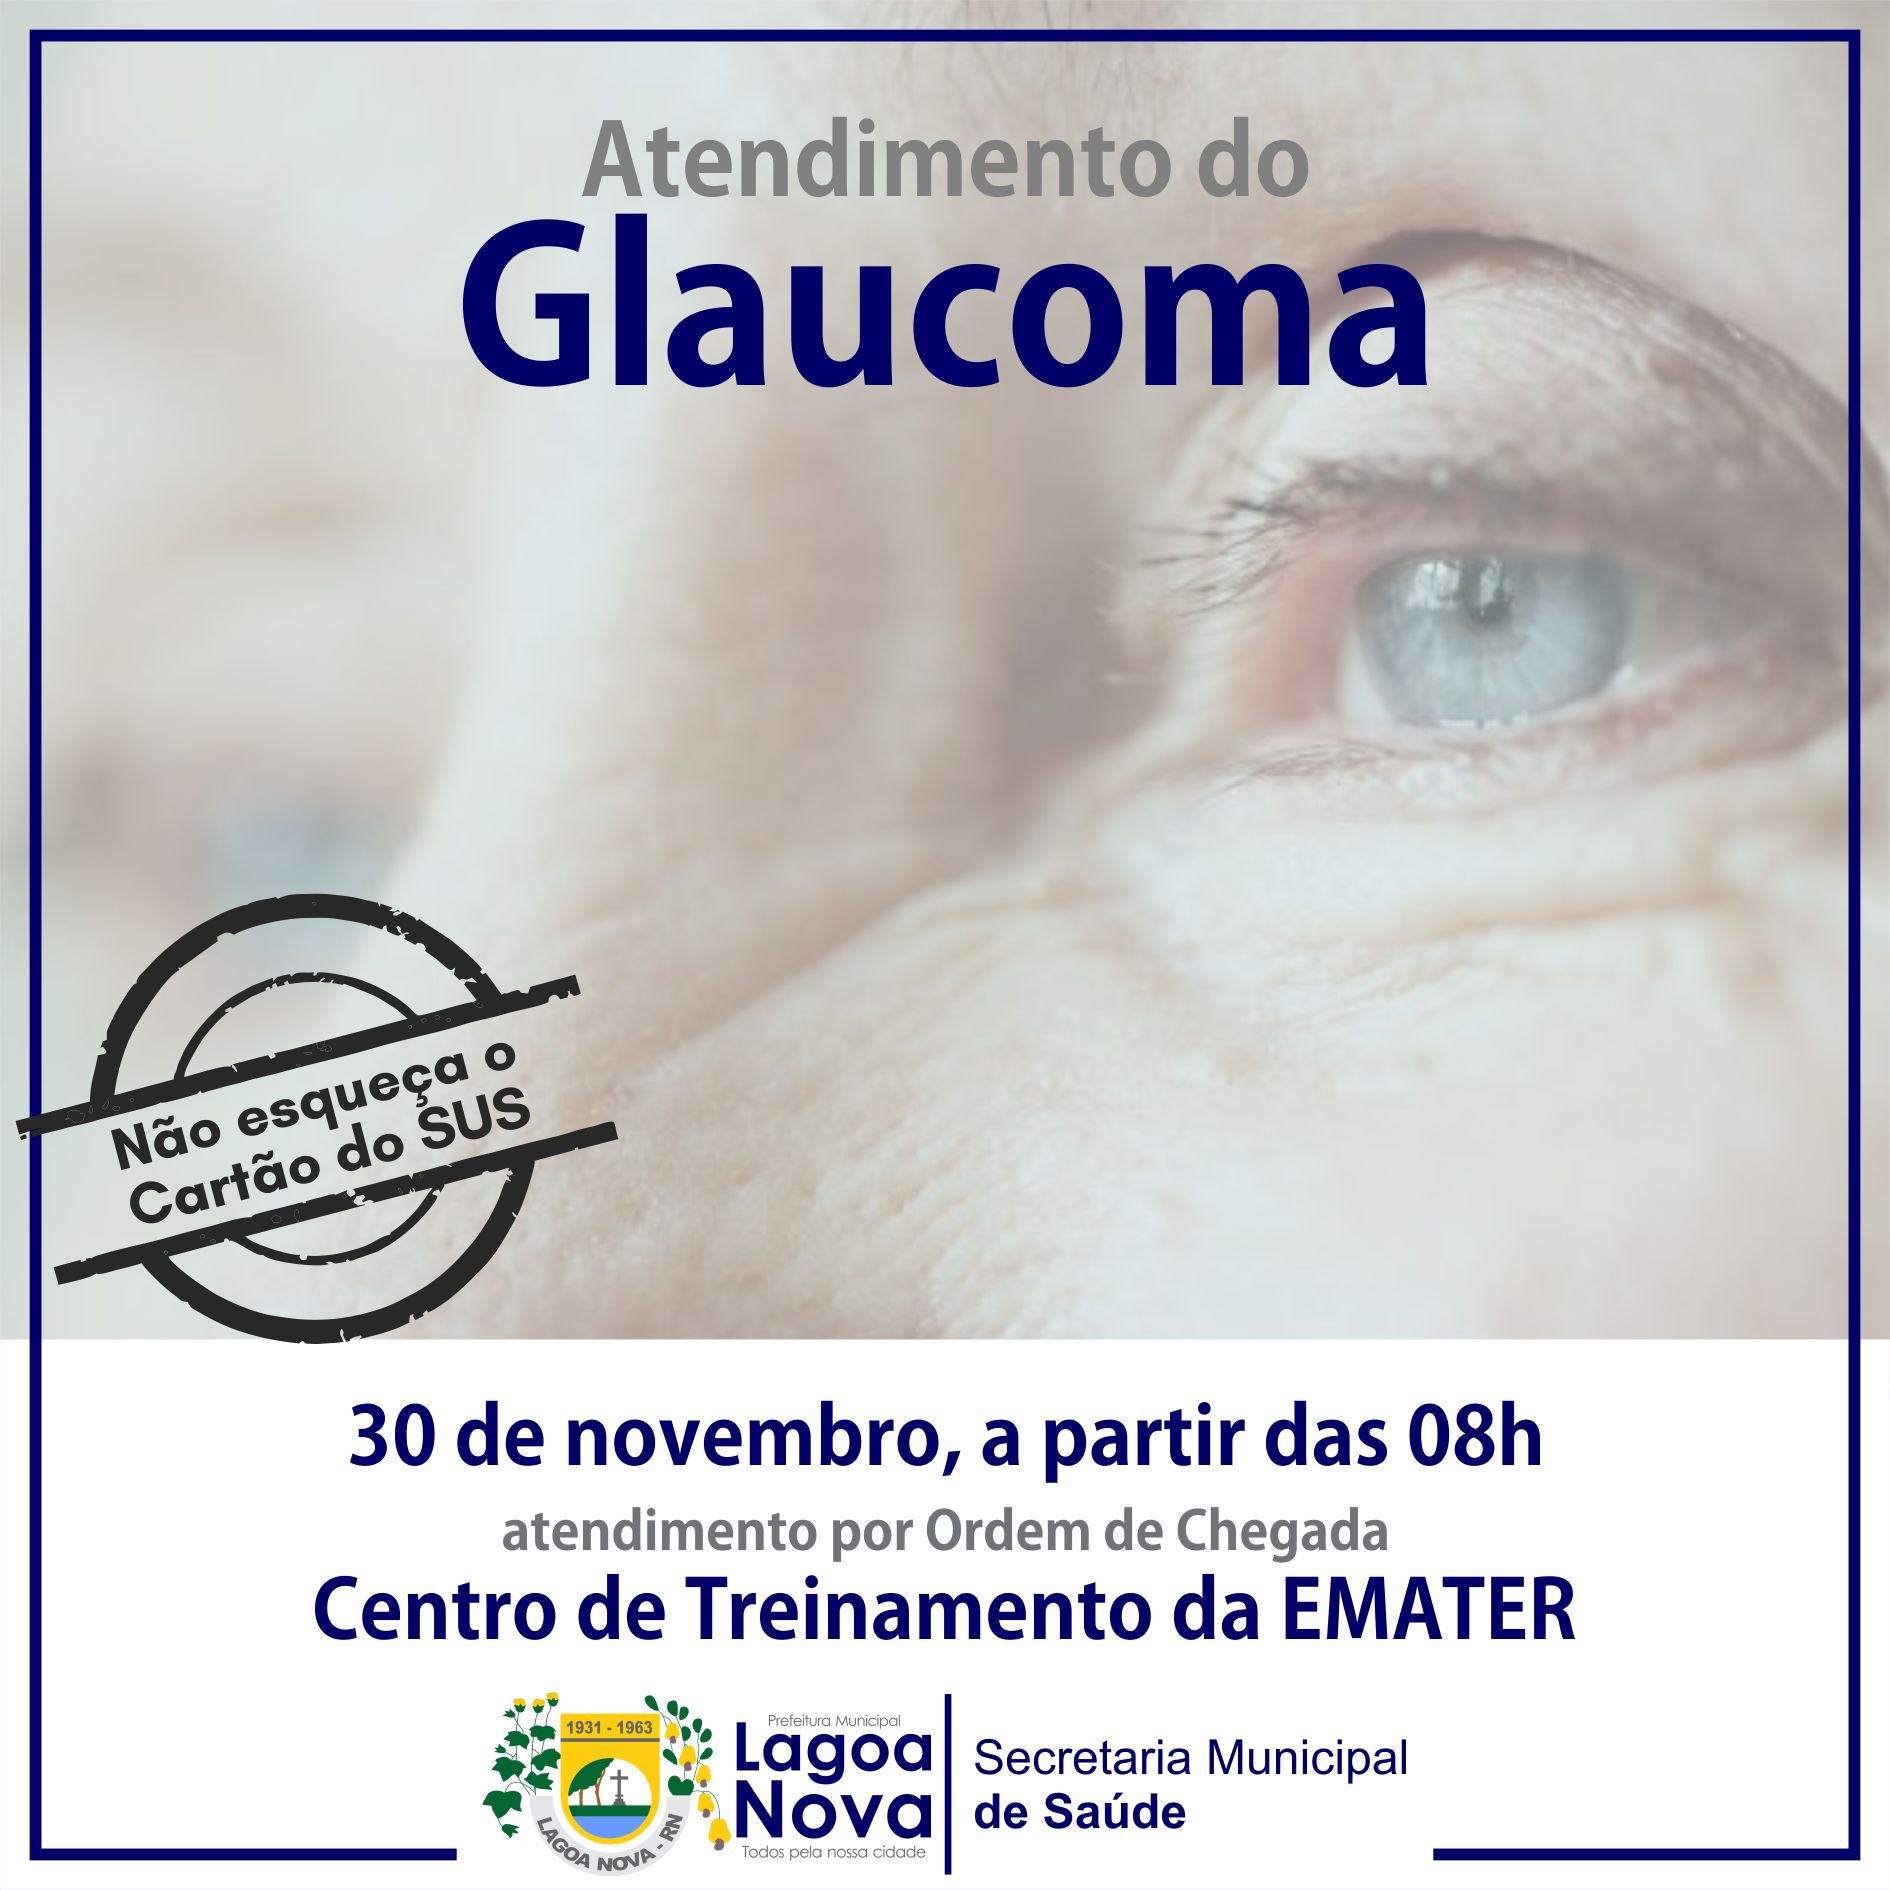 ATENDIMENTO DO GLAUCOMA